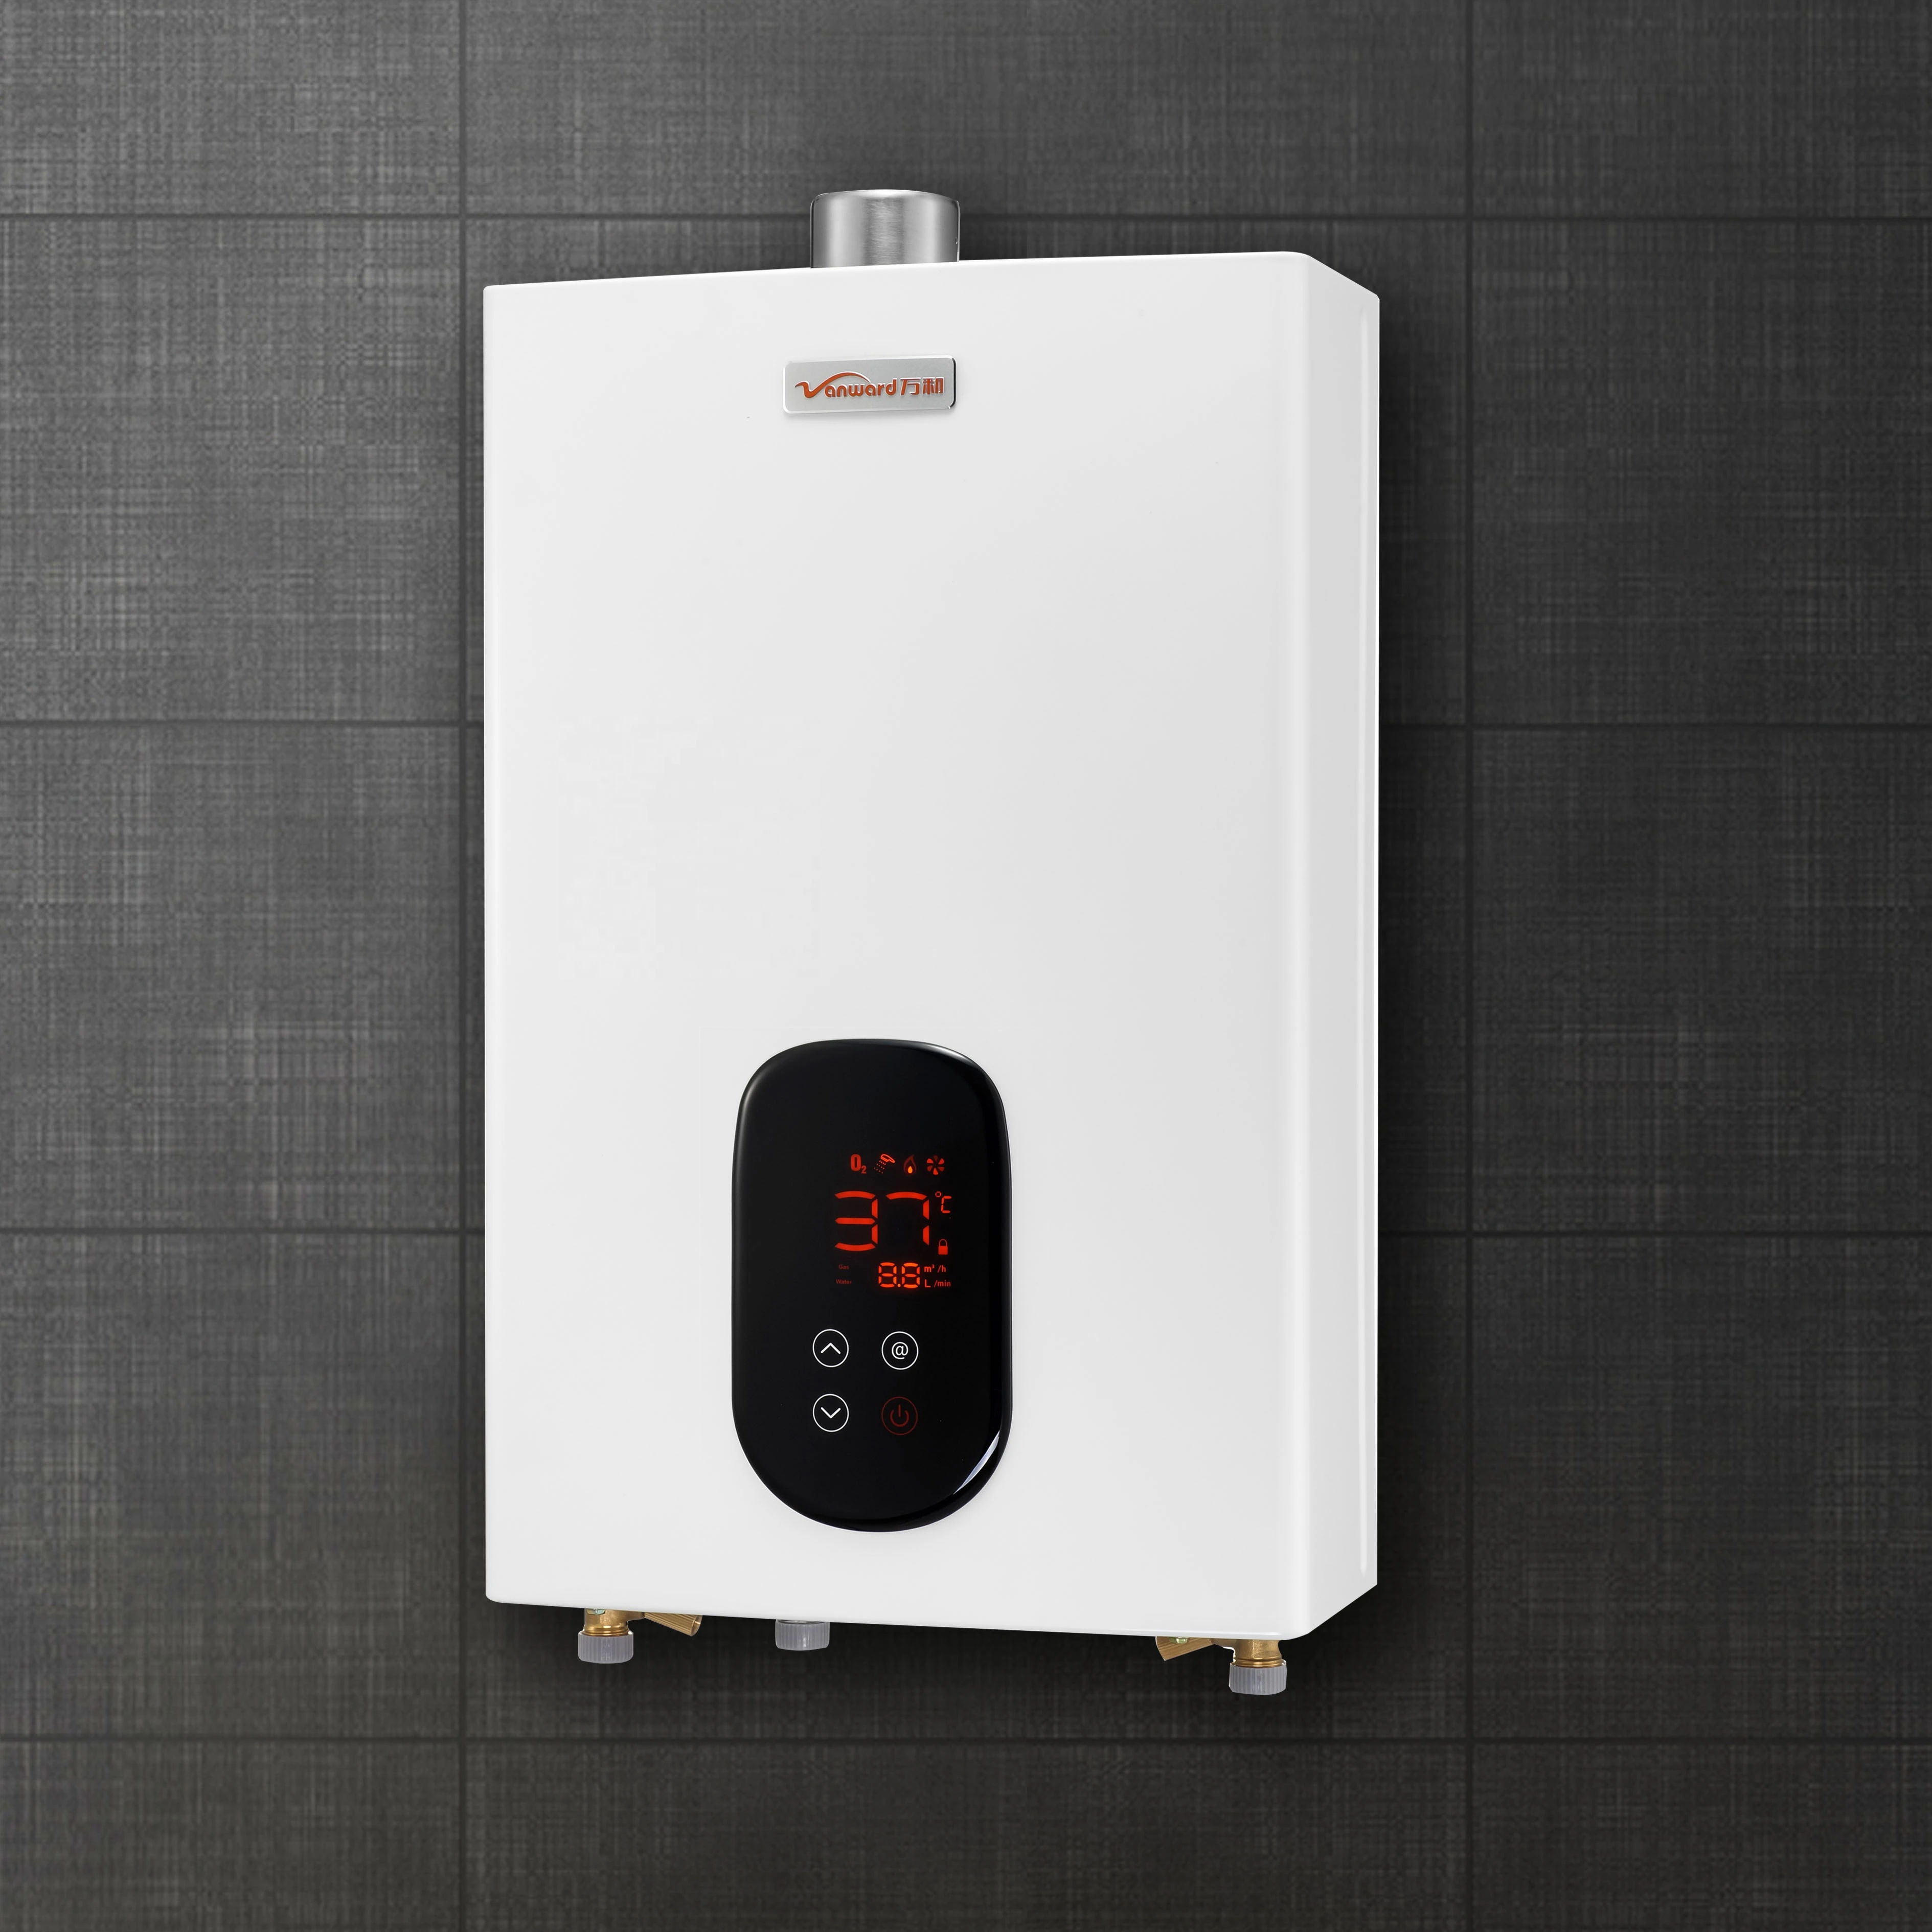 Vanward hotsale tankless instant gas water heater S12